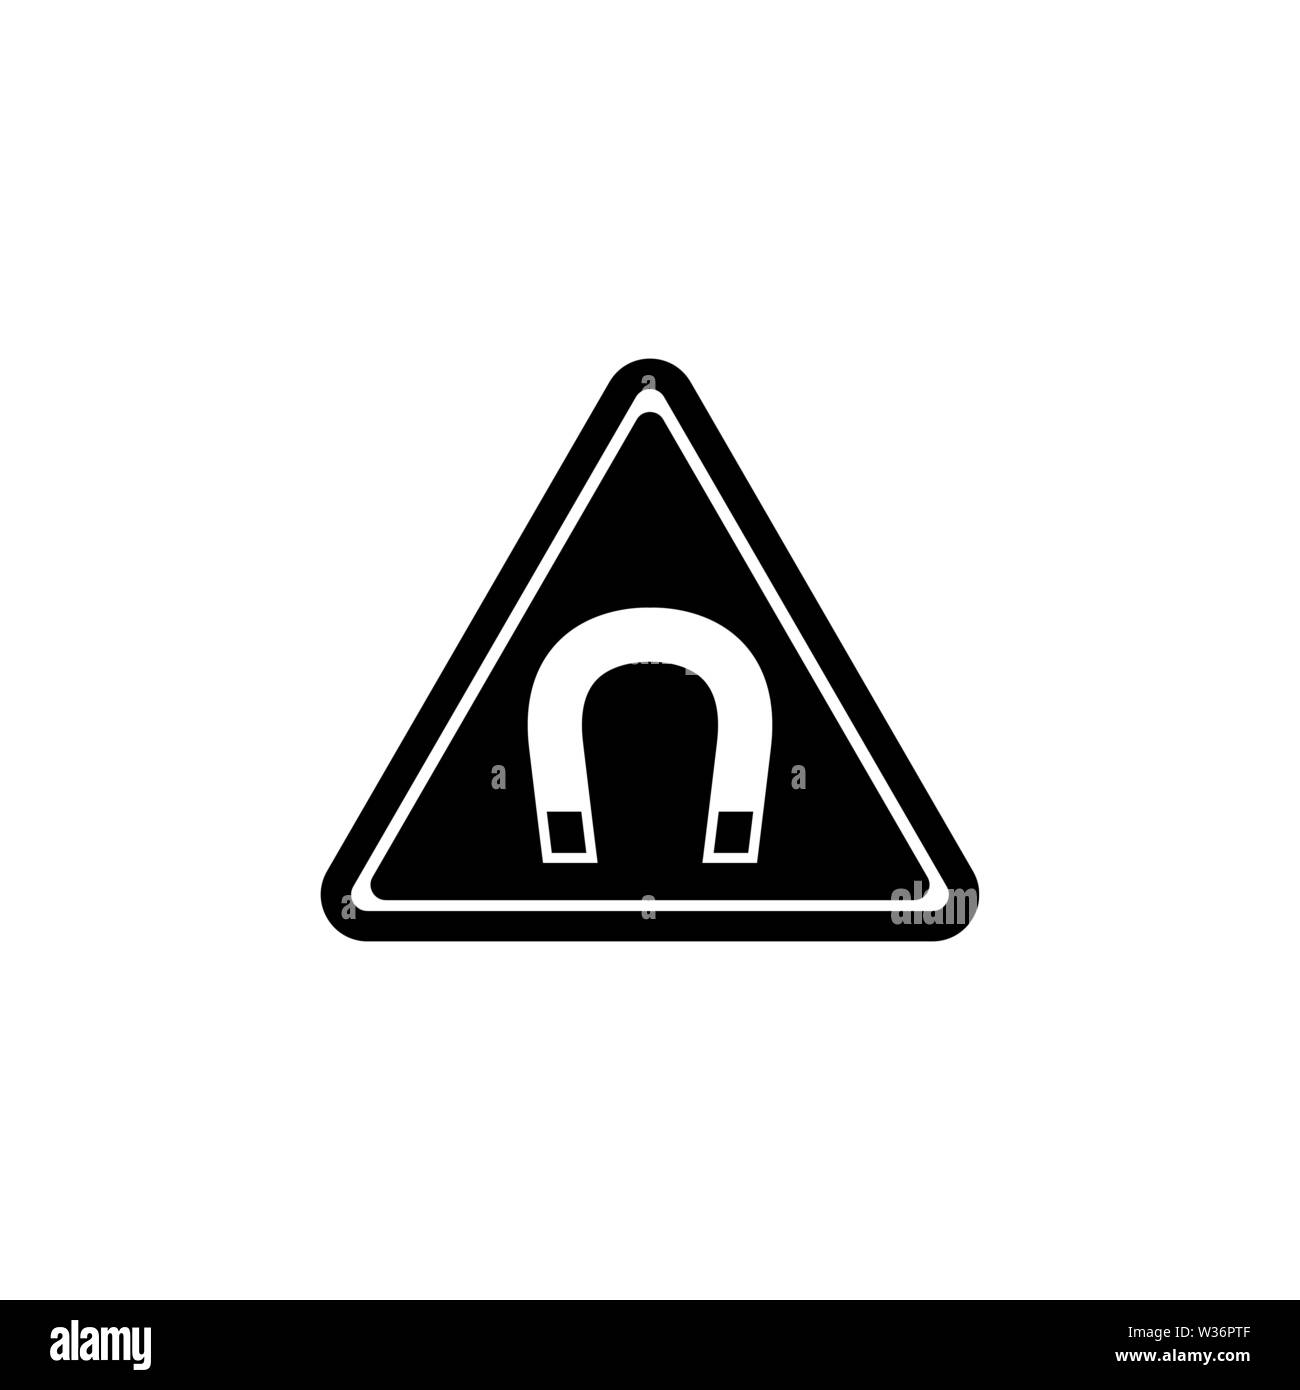 Starke magnetische Feld Warnung. Flache Vektor Icon Abbildung. Einfach schwarzes Symbol auf weißem Hintergrund. Starkes Magnetfeld Warning sign Design templ Stock Vektor